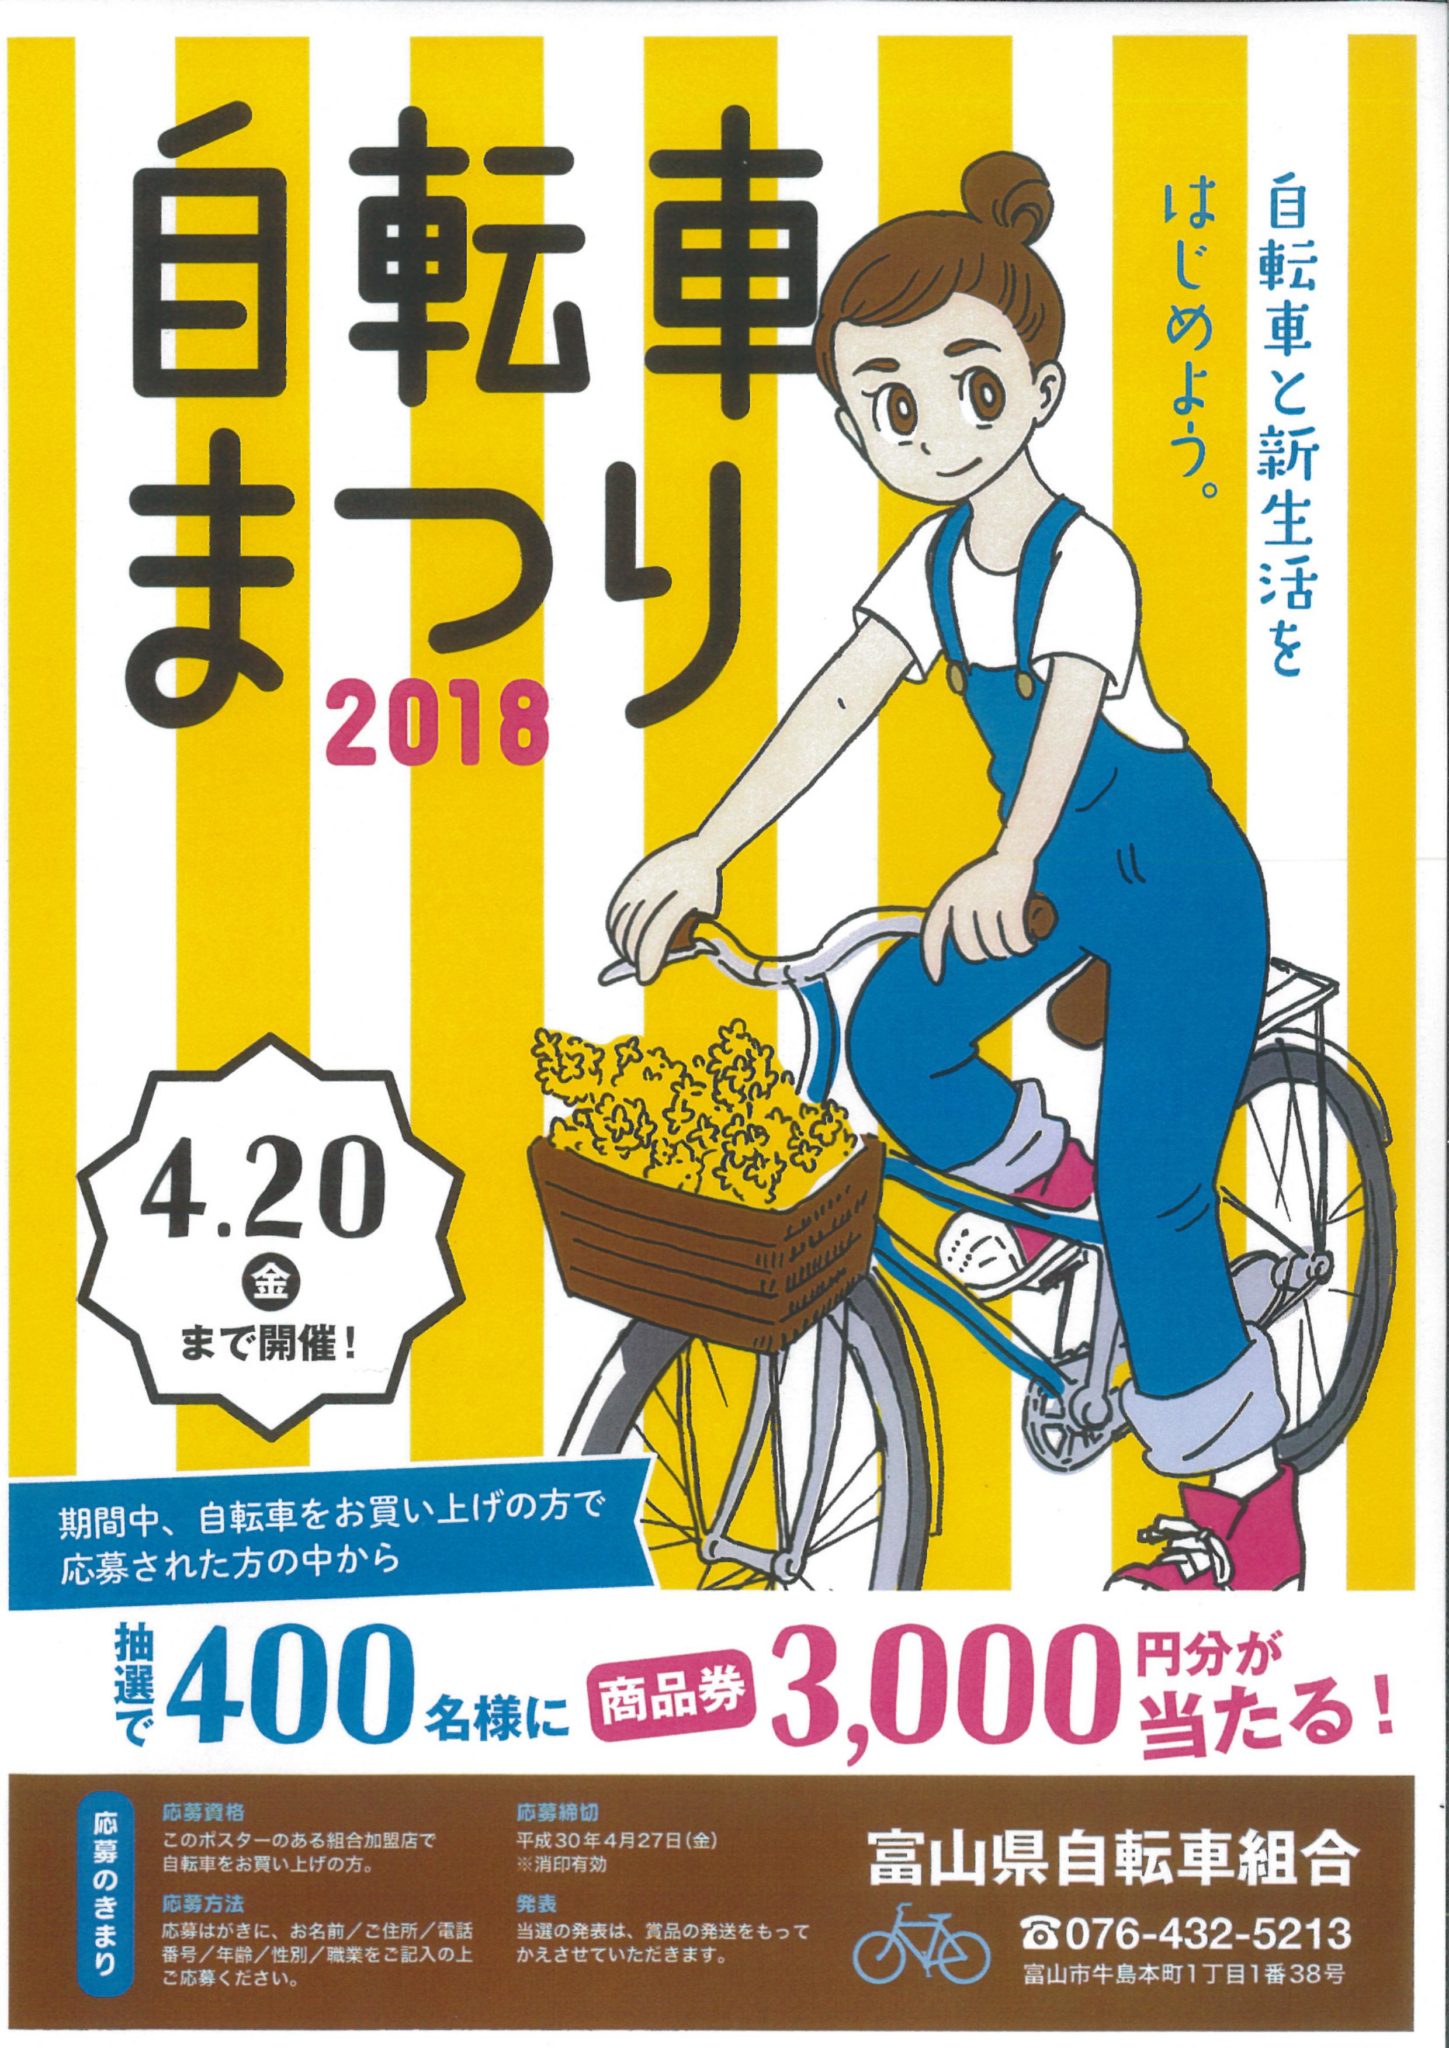 商品券3,000円分がもらえる！ 自転車まつり開催中!! | とやまサイクルWEB